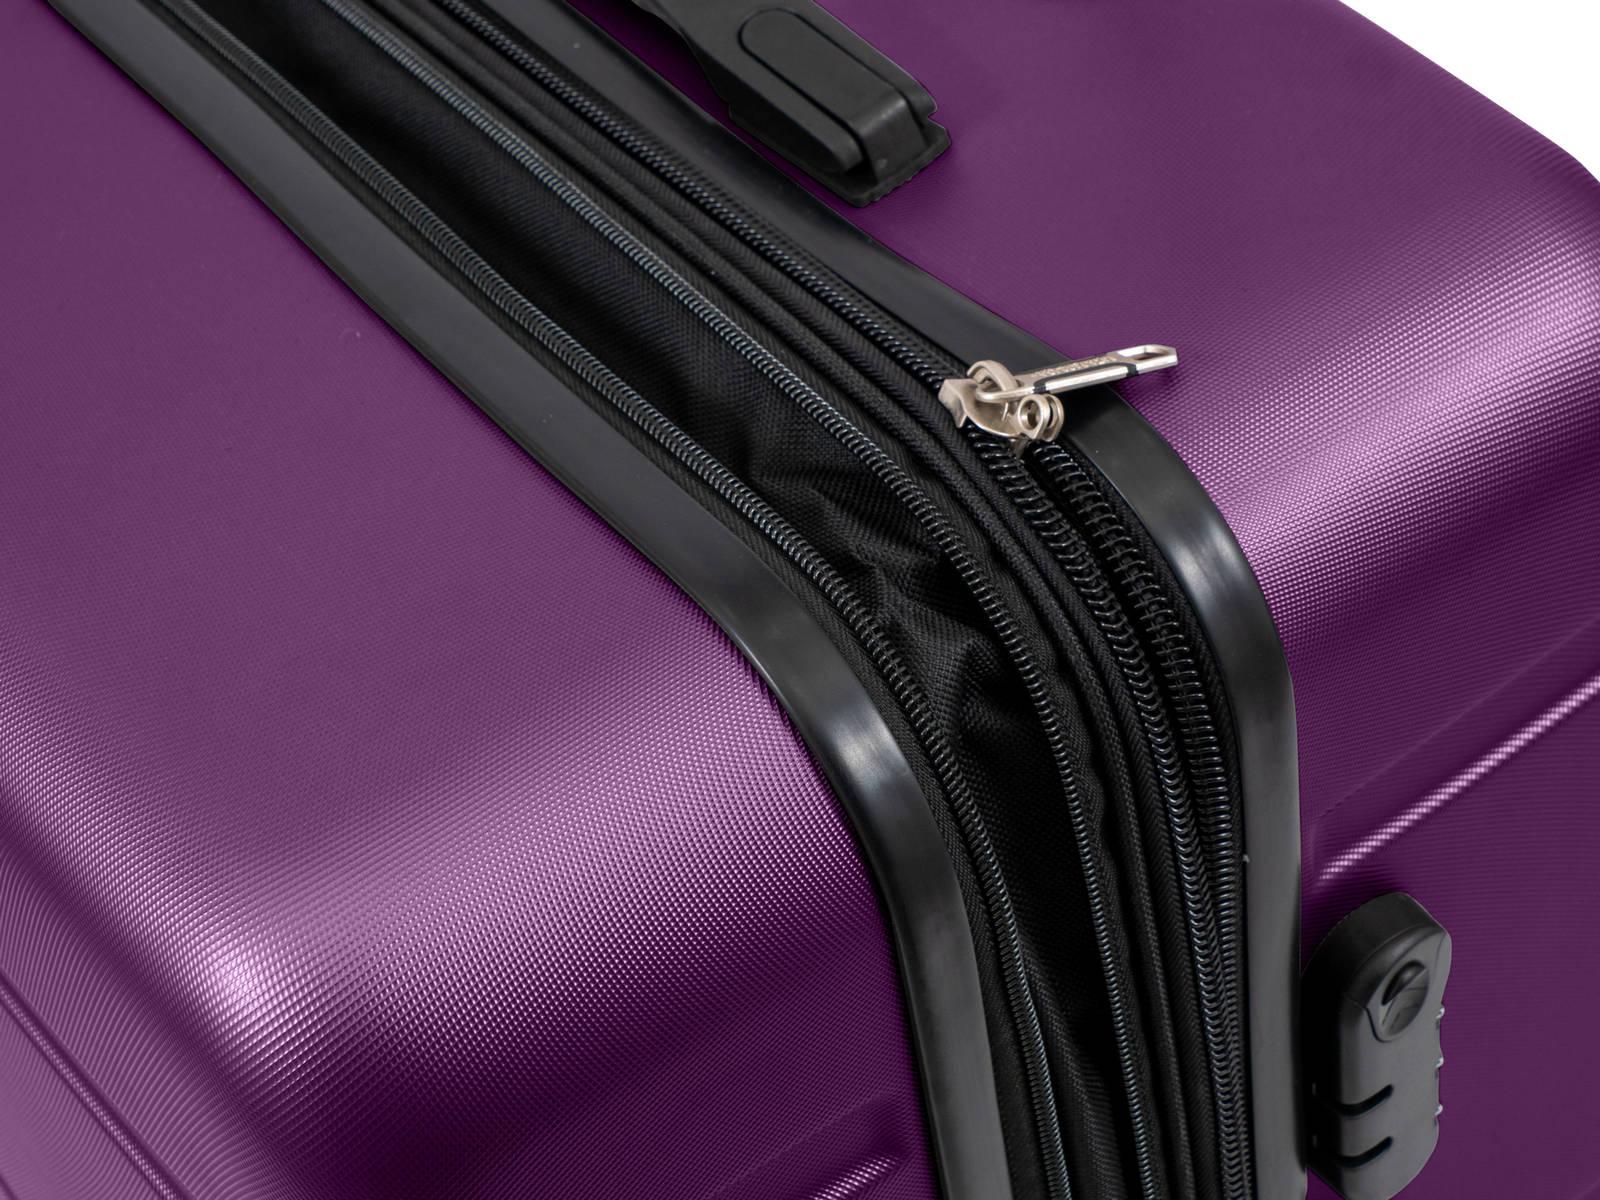 מזוודה קשיחה גדולה 28" דגם 1807 בצבע סגול - MASHBIR//365